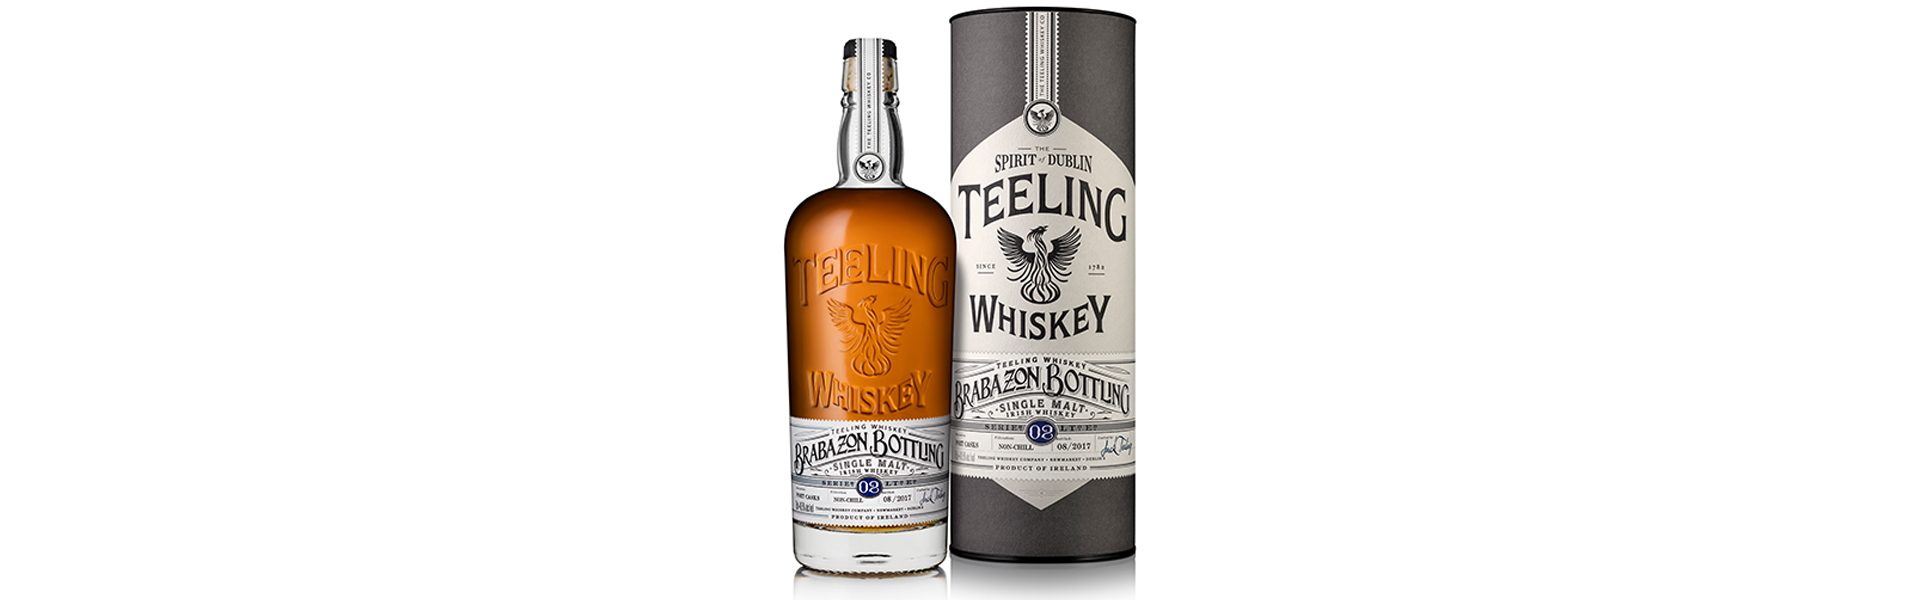 Portvinslagrad whiskey i exklusivt släpp från irländska Teeling